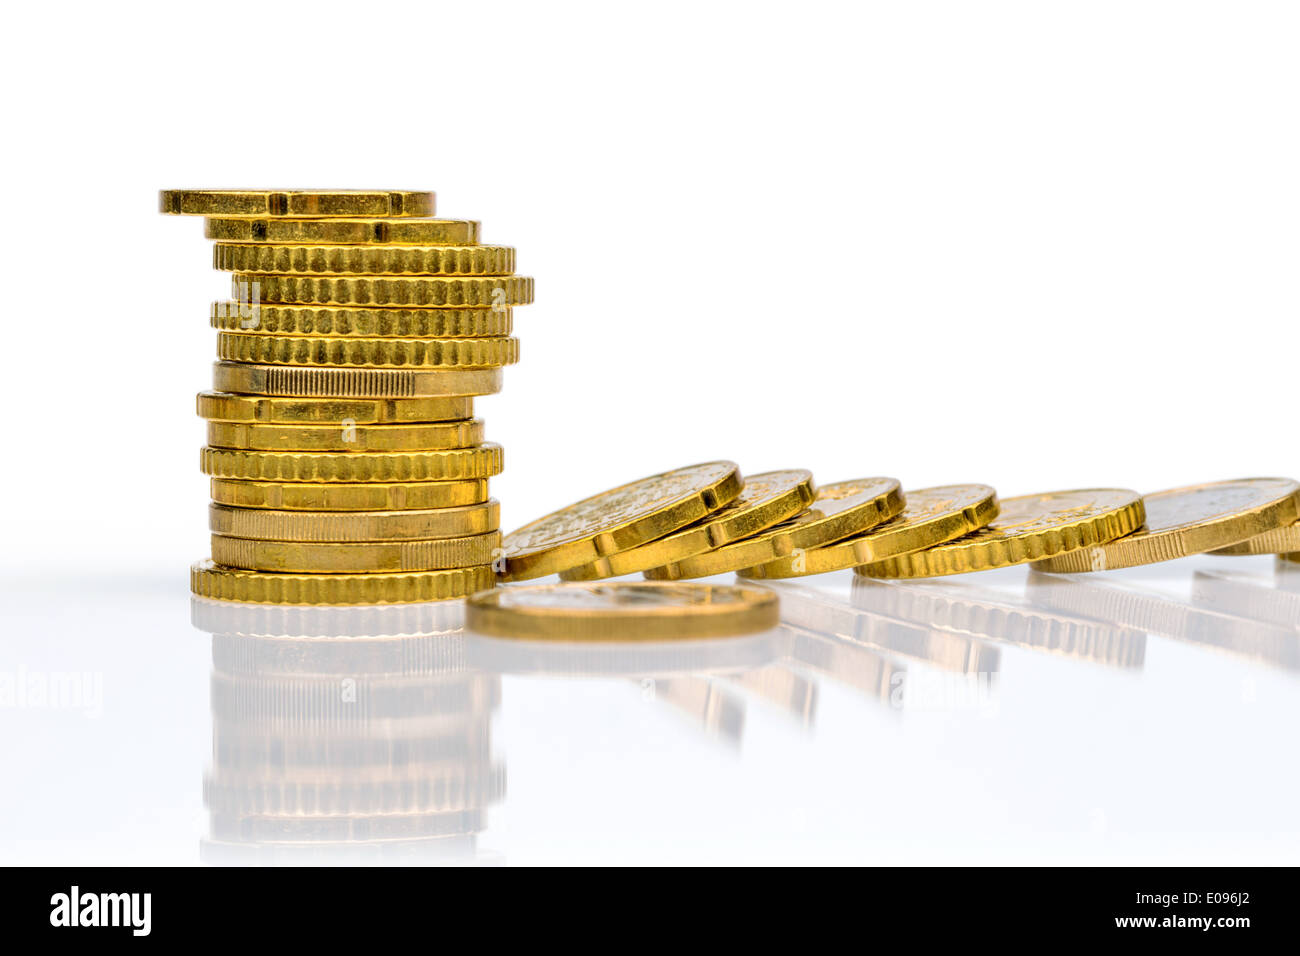 Monete e pali monetaria giacciono su uno sfondo bianco, Muenzen und Geldstapel liegen auf einem weissen Hintergrund Foto Stock